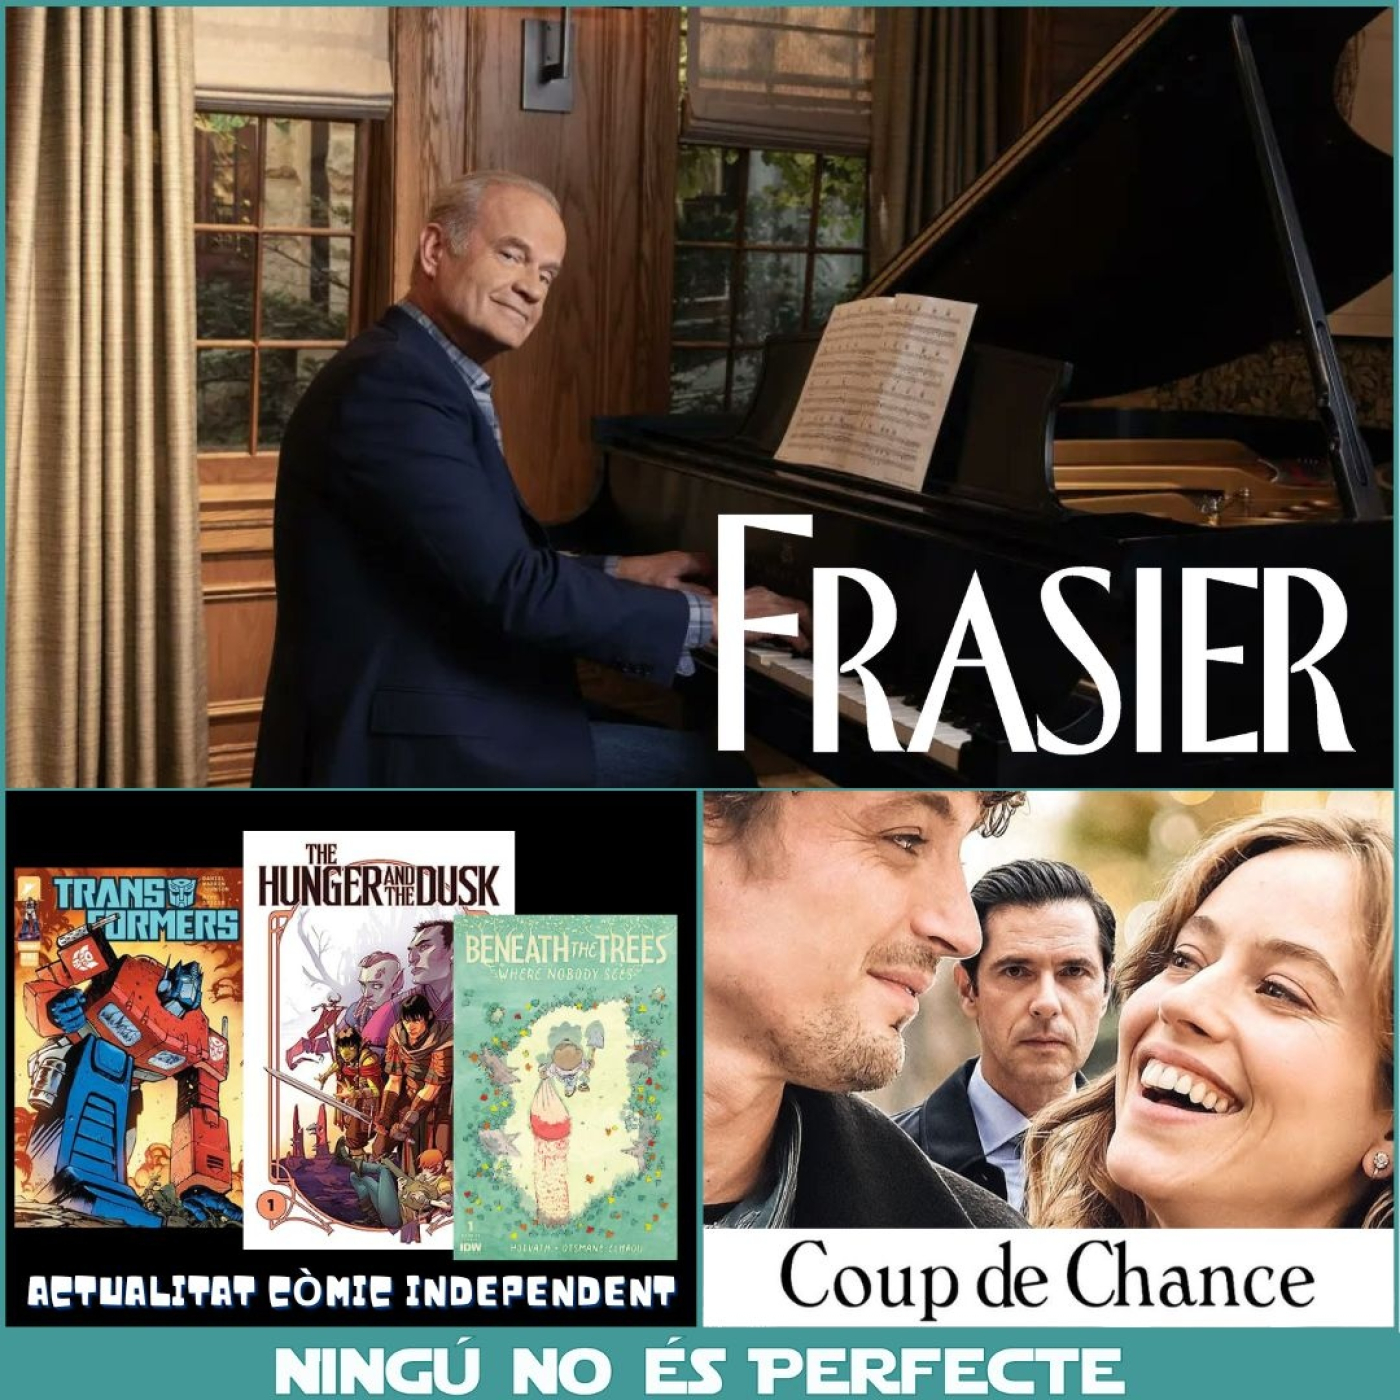 NNEP 23×31 – Frasier (2023) temporada 1, Coup de chance i actualitat còmic independent